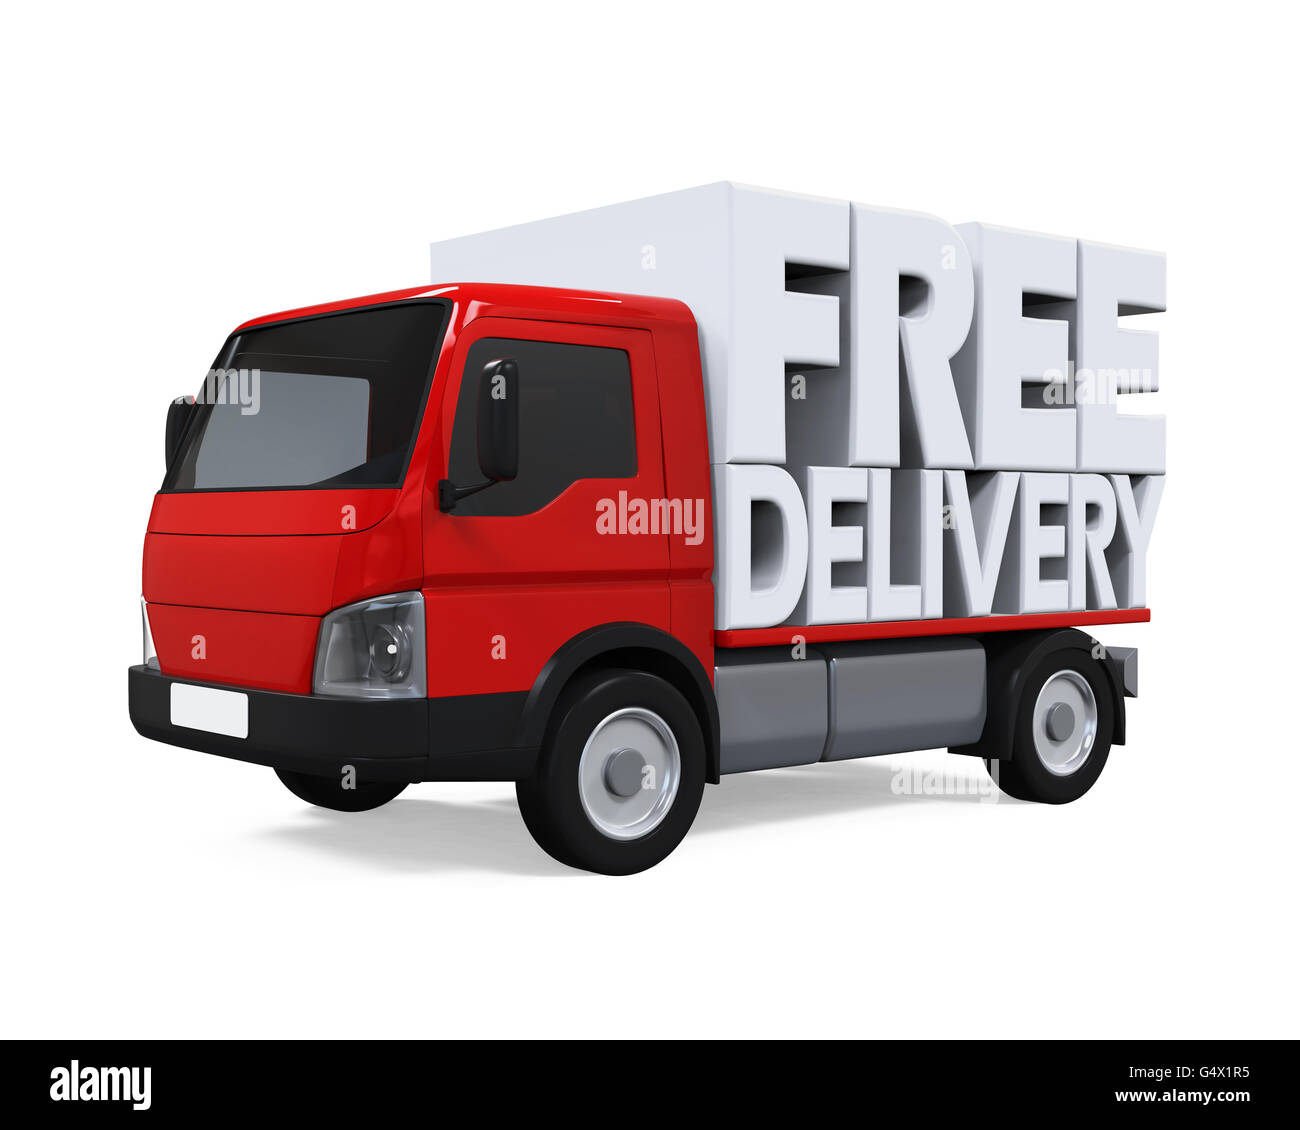 art van free delivery